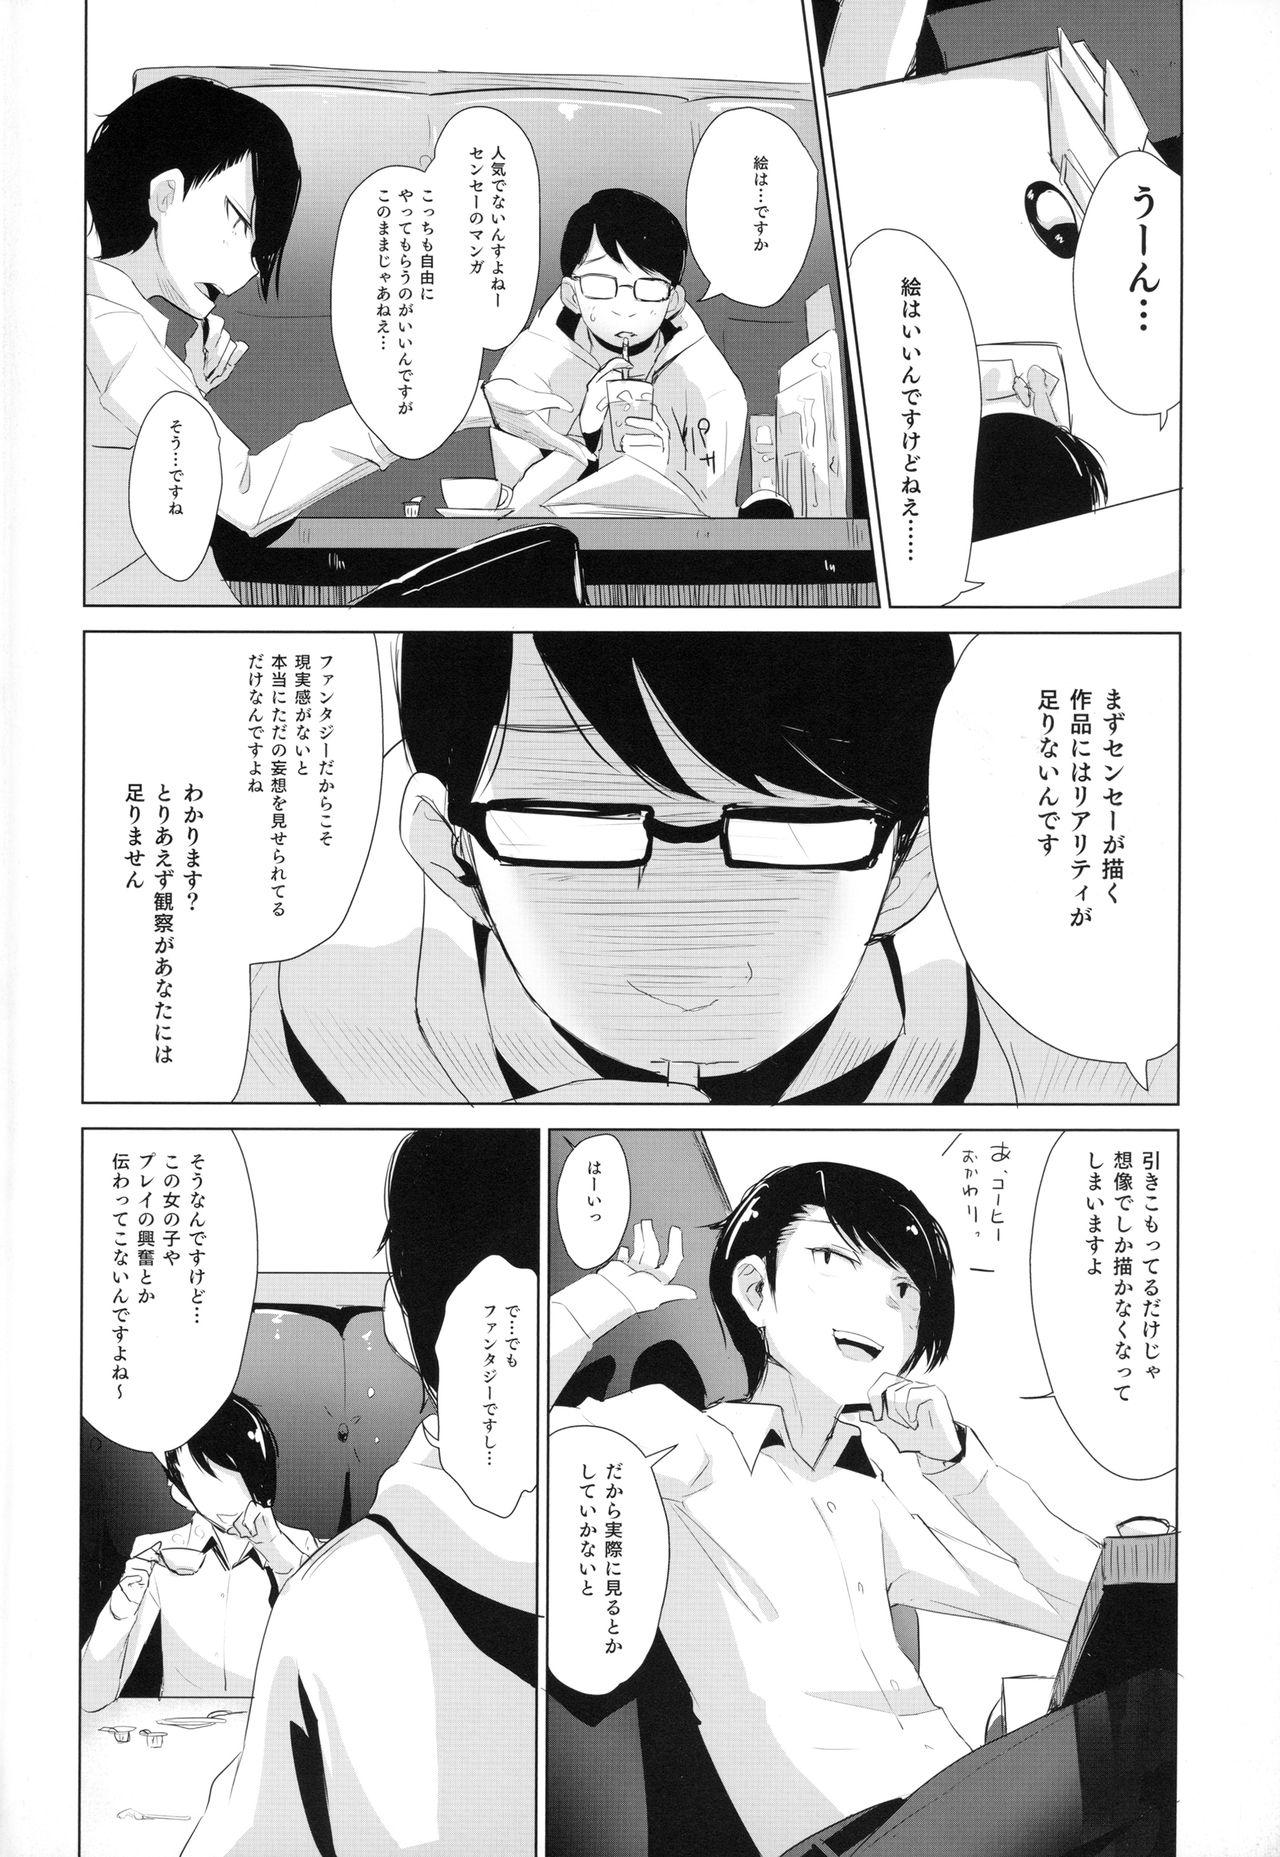 Rachirare Shoujo wa, Manga no Naka de __. Koharu Hen 2